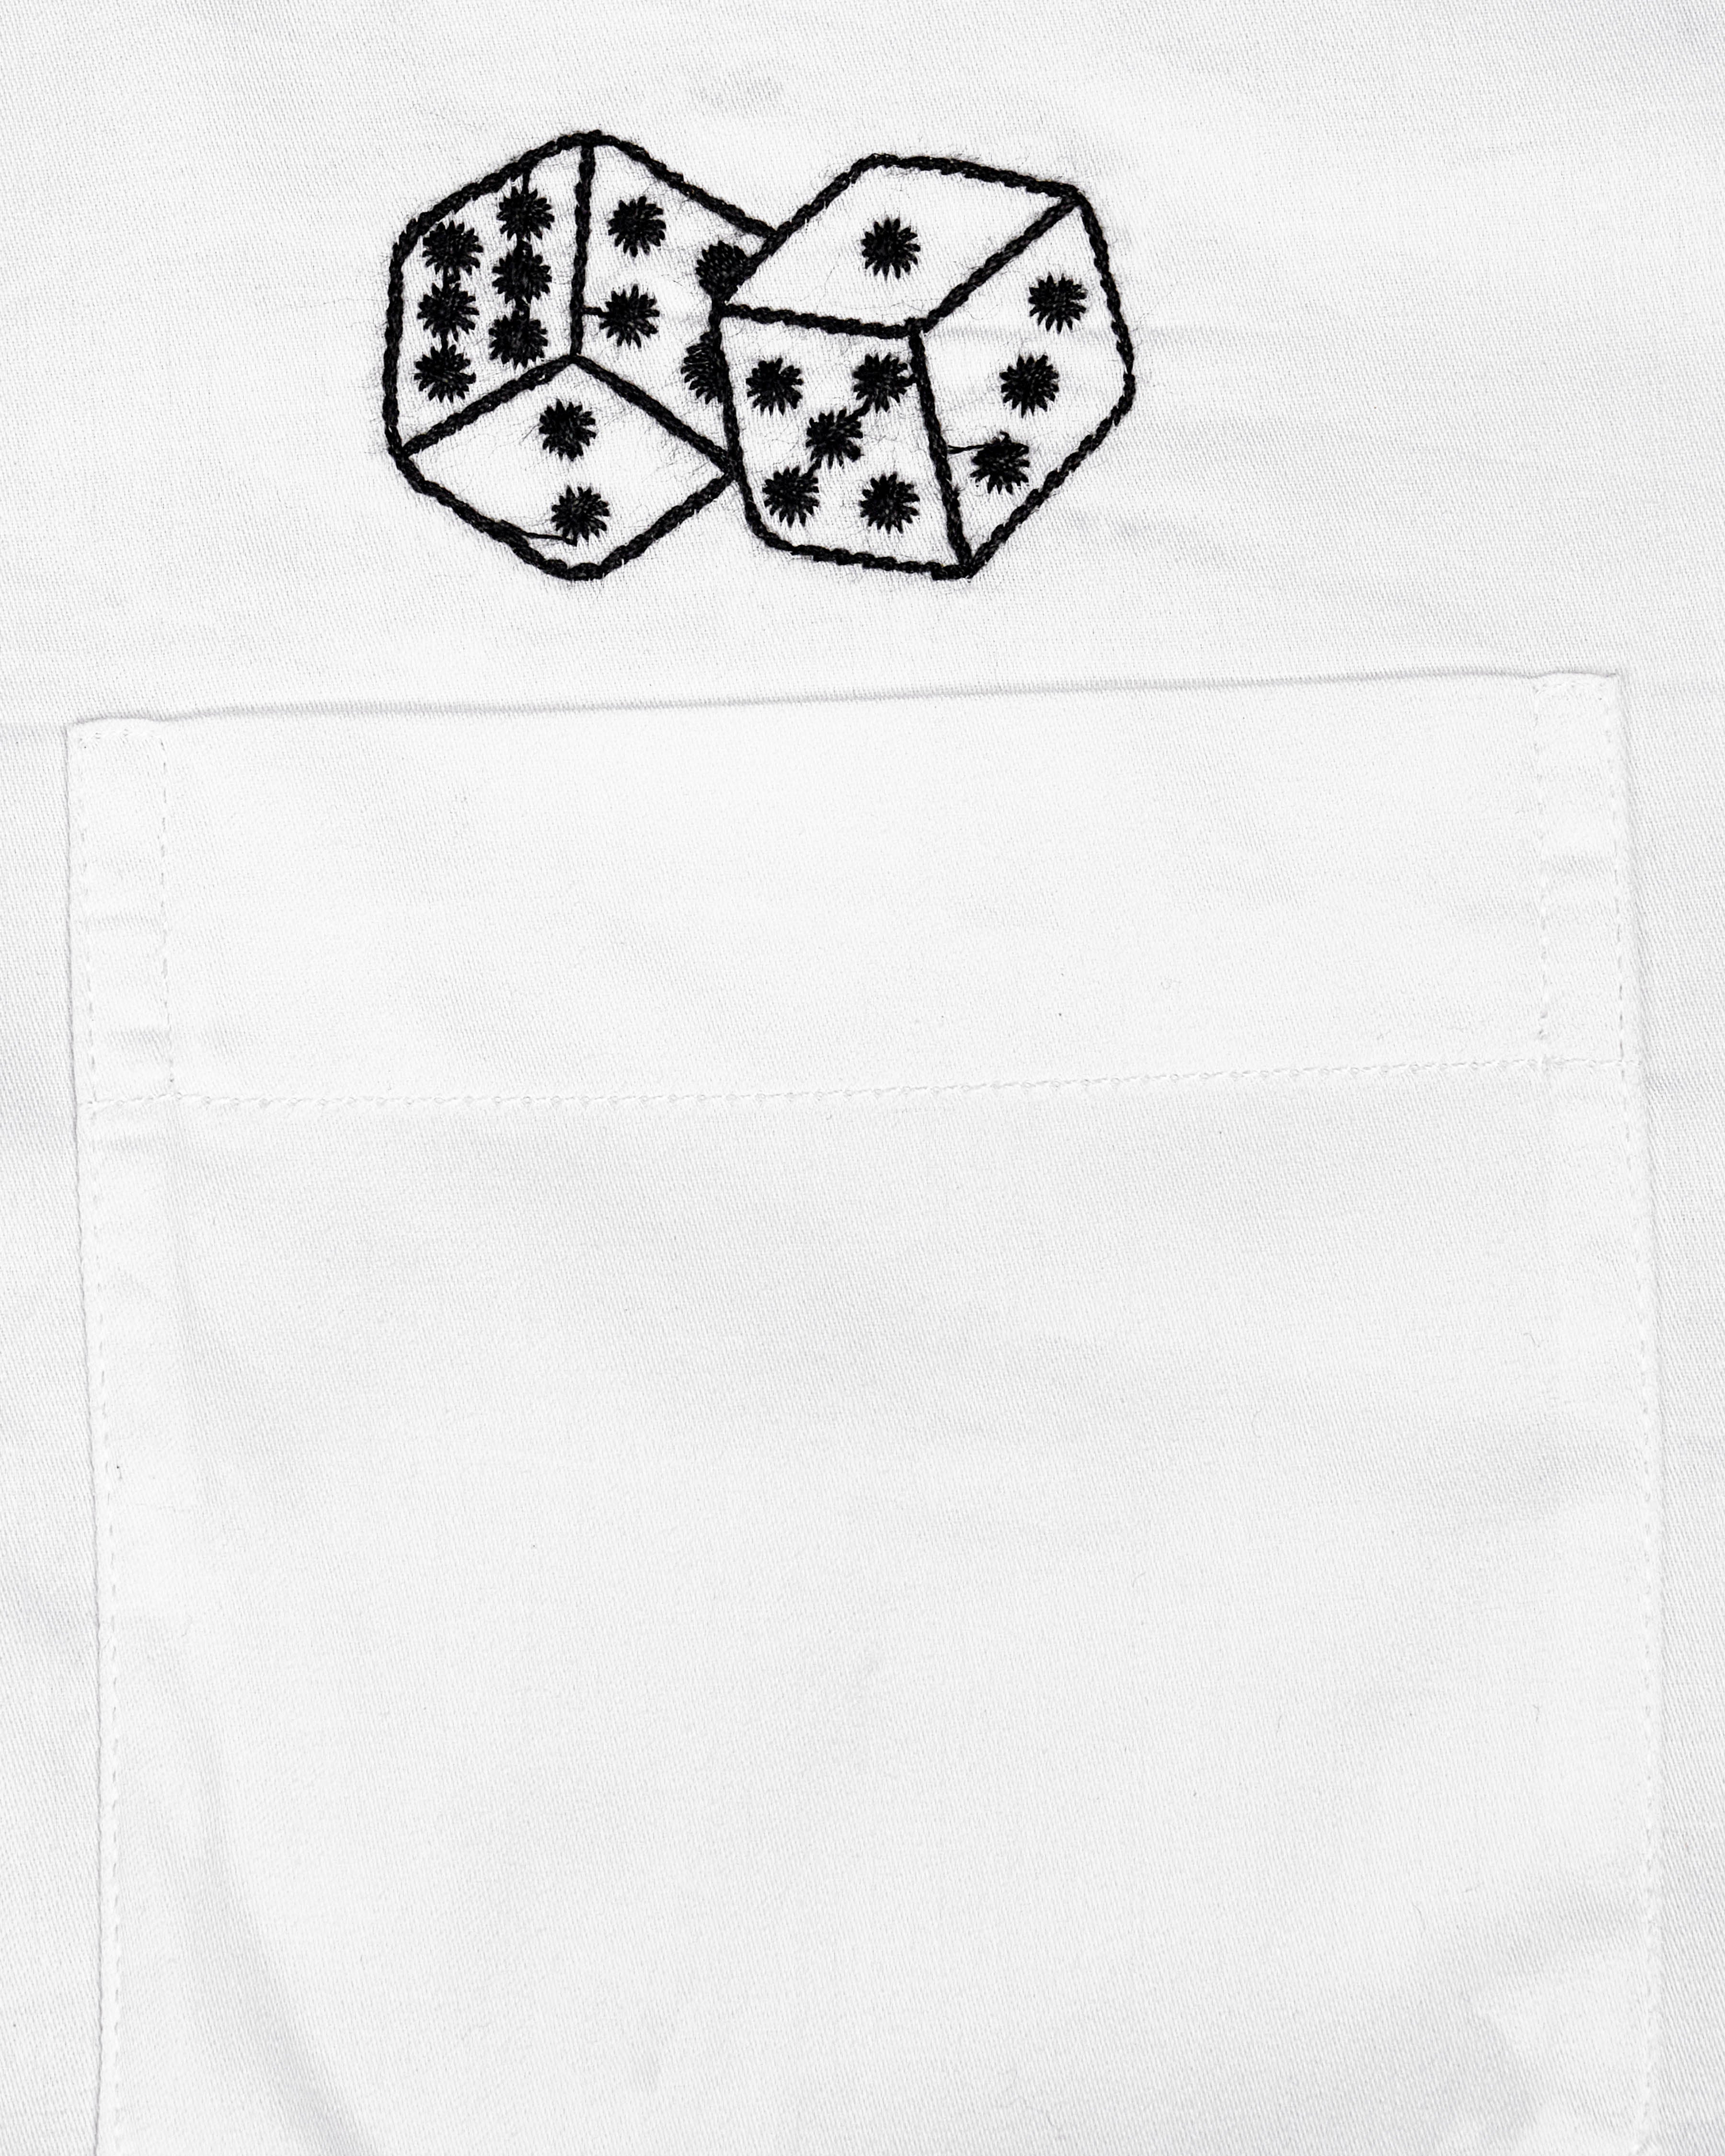 Bright White Dice Embroidered Super Soft Premium Cotton Kurta Shirt 2670-KS-E030-38, 2670-KS-E030-H-38, 2670-KS-E030-39, 2670-KS-E030-H-39, 2670-KS-E030-40, 2670-KS-E030-H-40, 2670-KS-E030-42, 2670-KS-E030-H-42, 2670-KS-E030-44, 2670-KS-E030-H-44, 2670-KS-E030-46, 2670-KS-E030-H-46, 2670-KS-E030-48, 2670-KS-E030-H-48, 2670-KS-E030-50, 2670-KS-E030-H-50, 2670-KS-E030-52, 2670-KS-E030-H-52